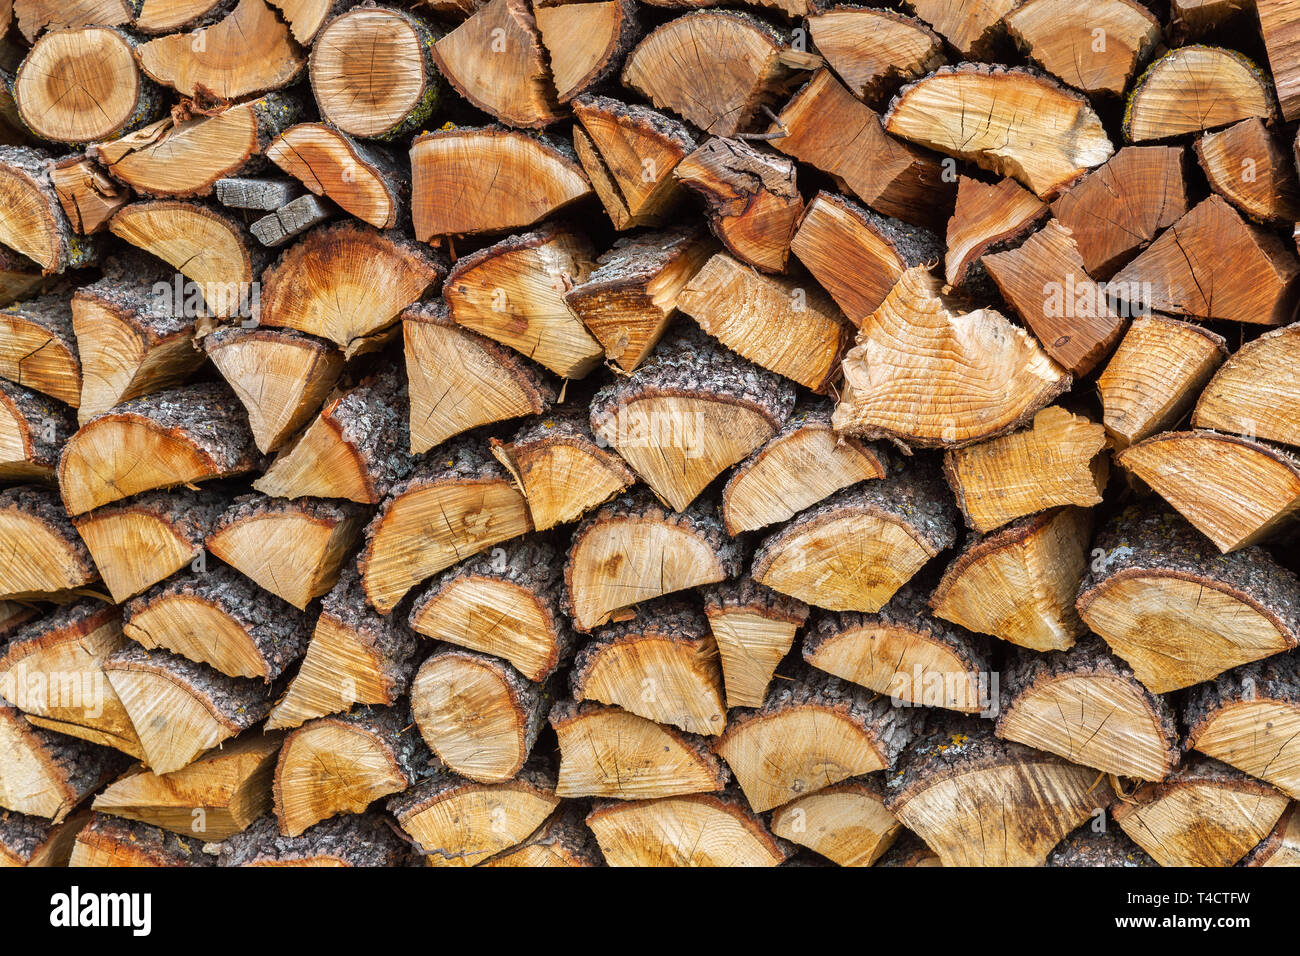 pile of firewood, renewable energy Stock Photo